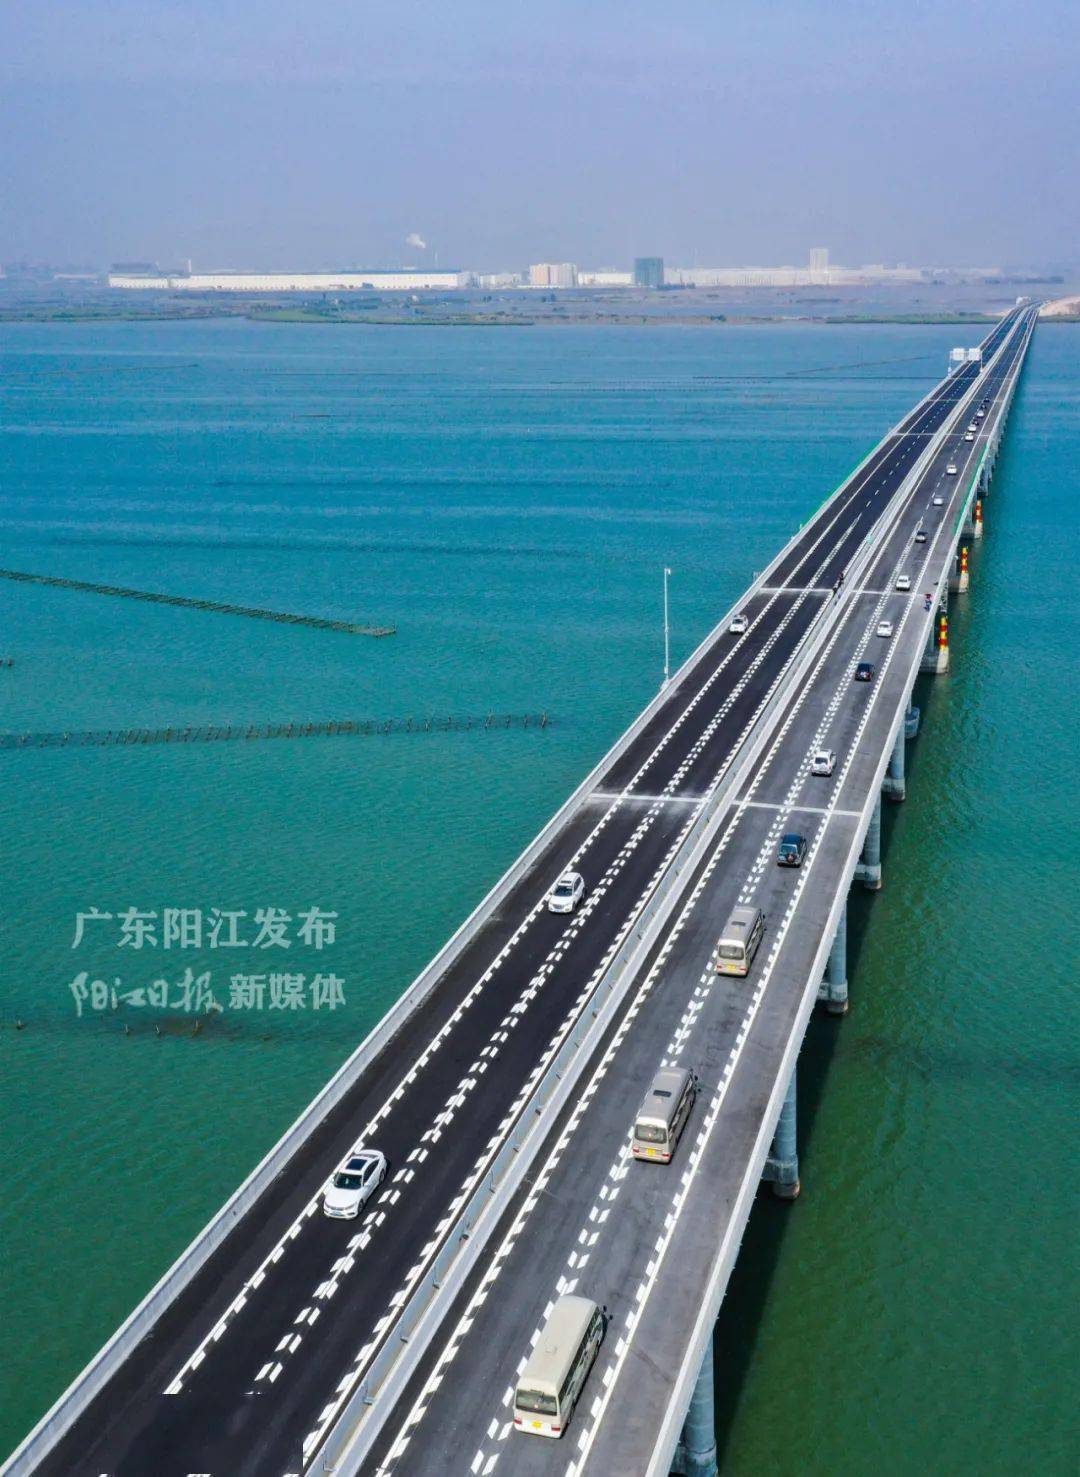 元旦假期,海陵岛大桥高速车流量逾1.3万辆次!